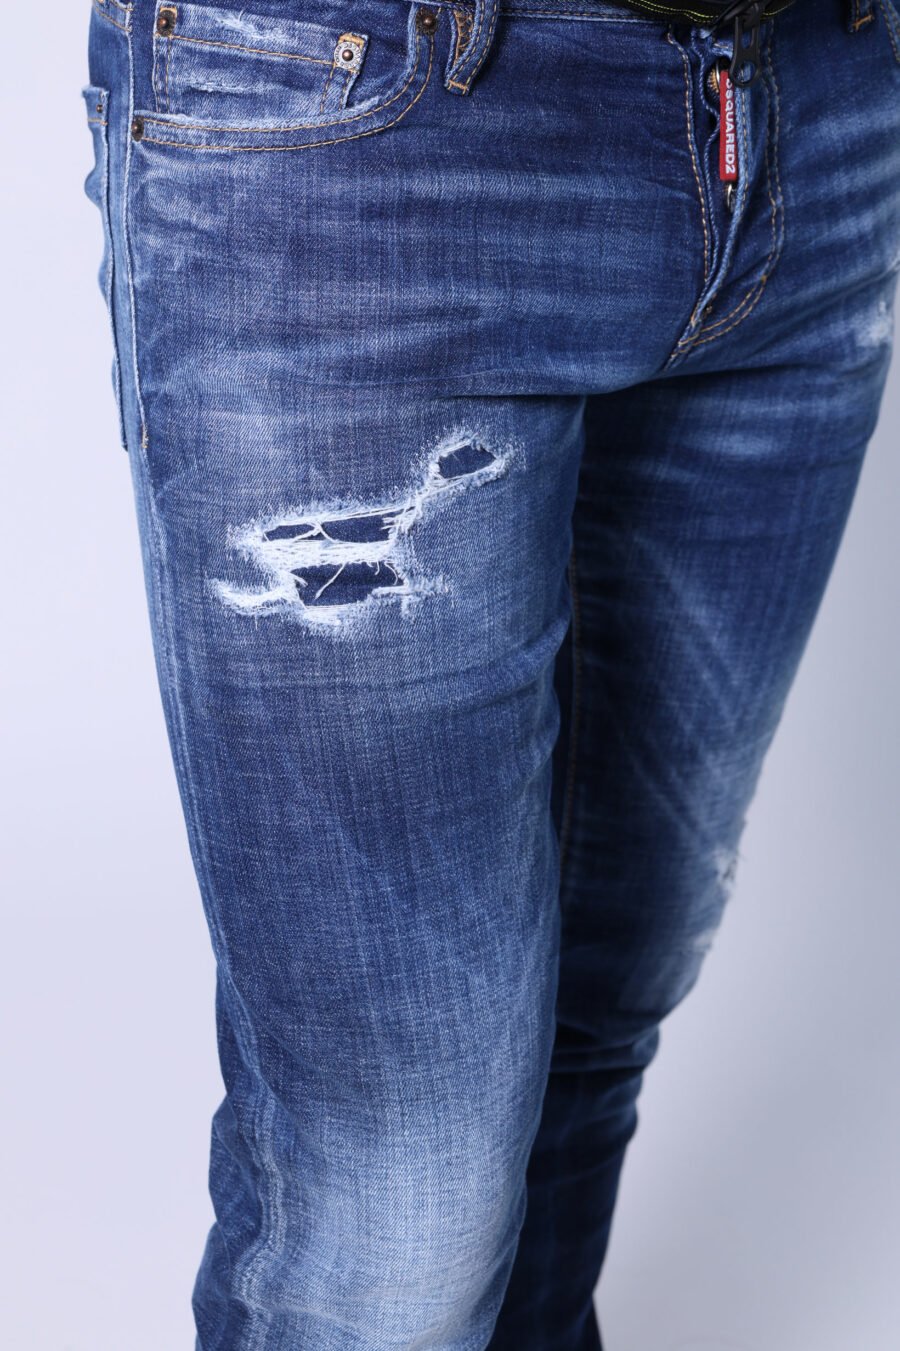 Slim jeans "Slim jean" blau semi-getragen mit Rissen - Untitled Catalog 05531